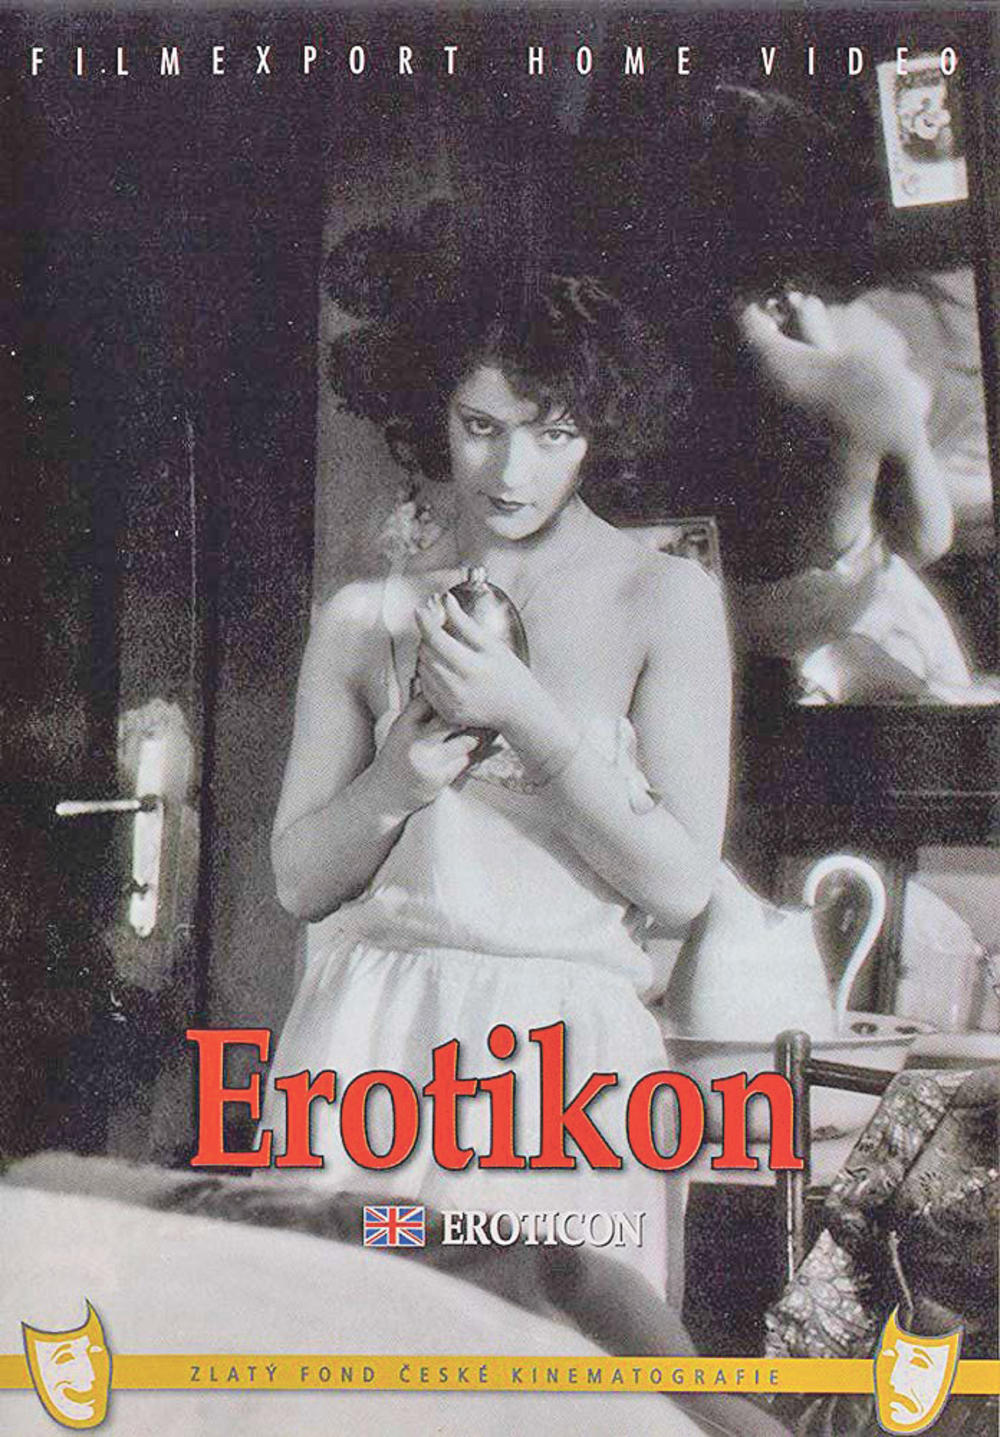 Najpoznatija žena iz ukrštenica... Slovenka Ita Rina proslavila  se češkim  filmom  „Erotikon“ 1929. godine. Kasnije se udala za srpskog inženjera Đorđevića i promenila ime u Tamara